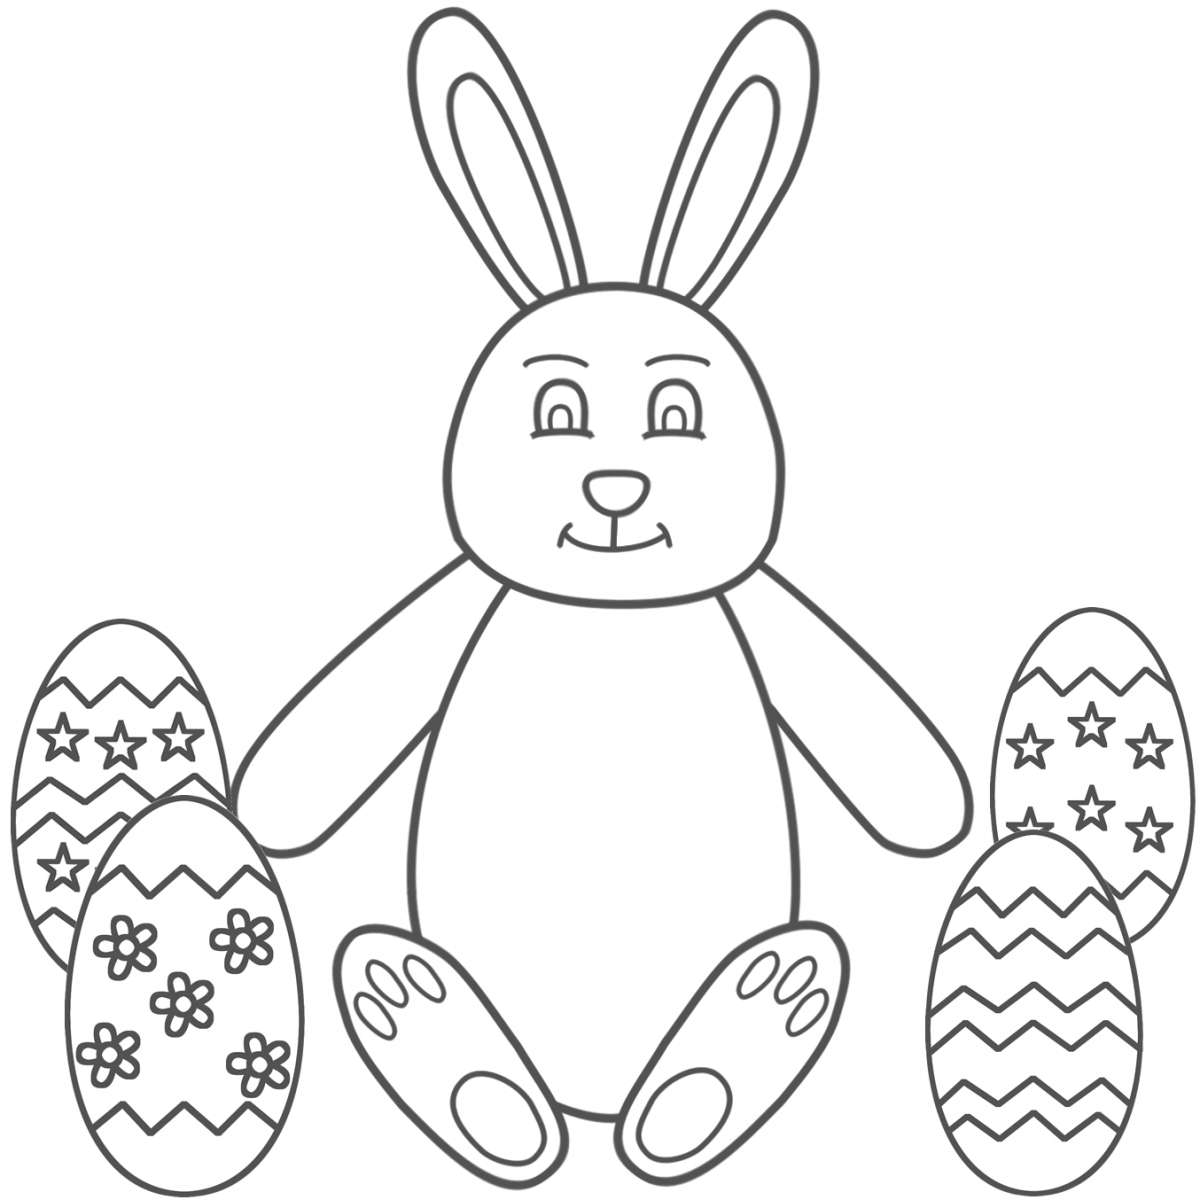 Disegno molto semplice di coniglio